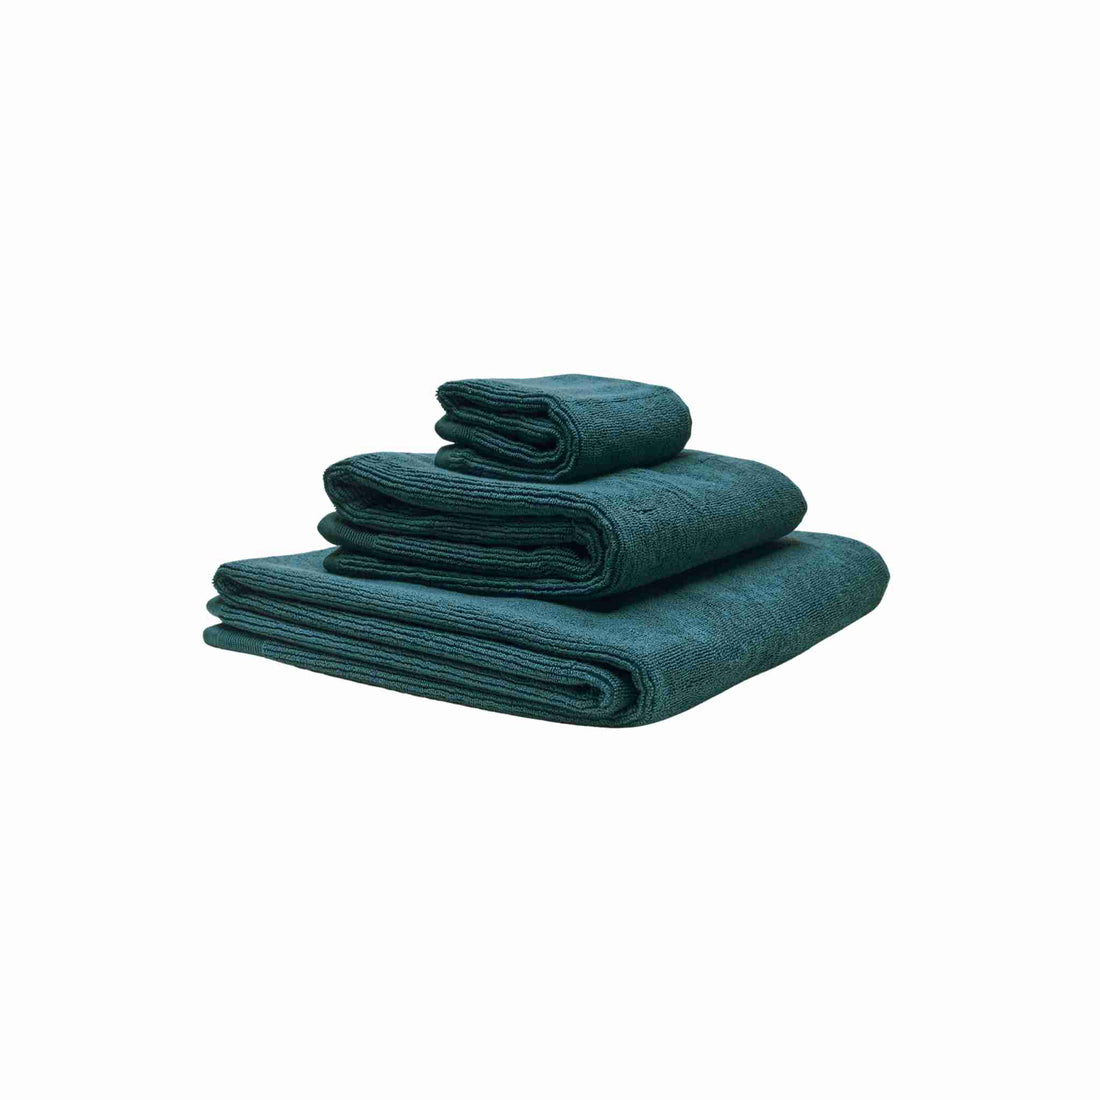 Håndklæder i økologisk bomuld og af forskellig størrelser stablet oven på hinanden. Farven på håndklæderne er petroliumsblå.